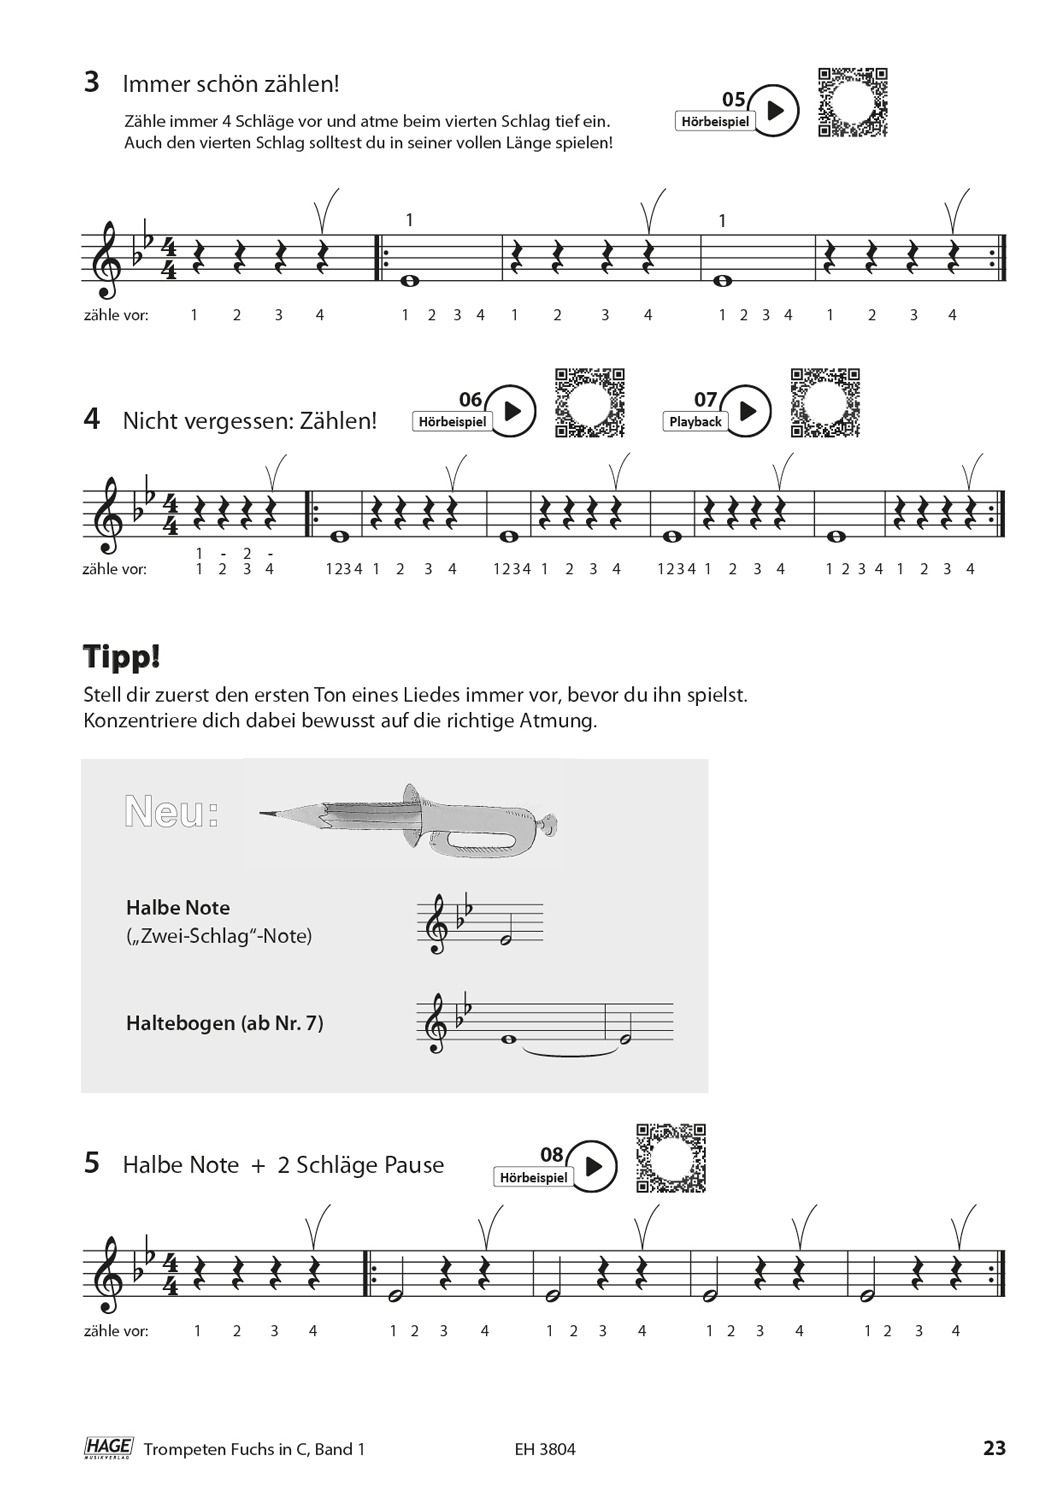 Trompeten Fuchs Band 1 in C für Posaunenchor (mit CD) Seiten 6